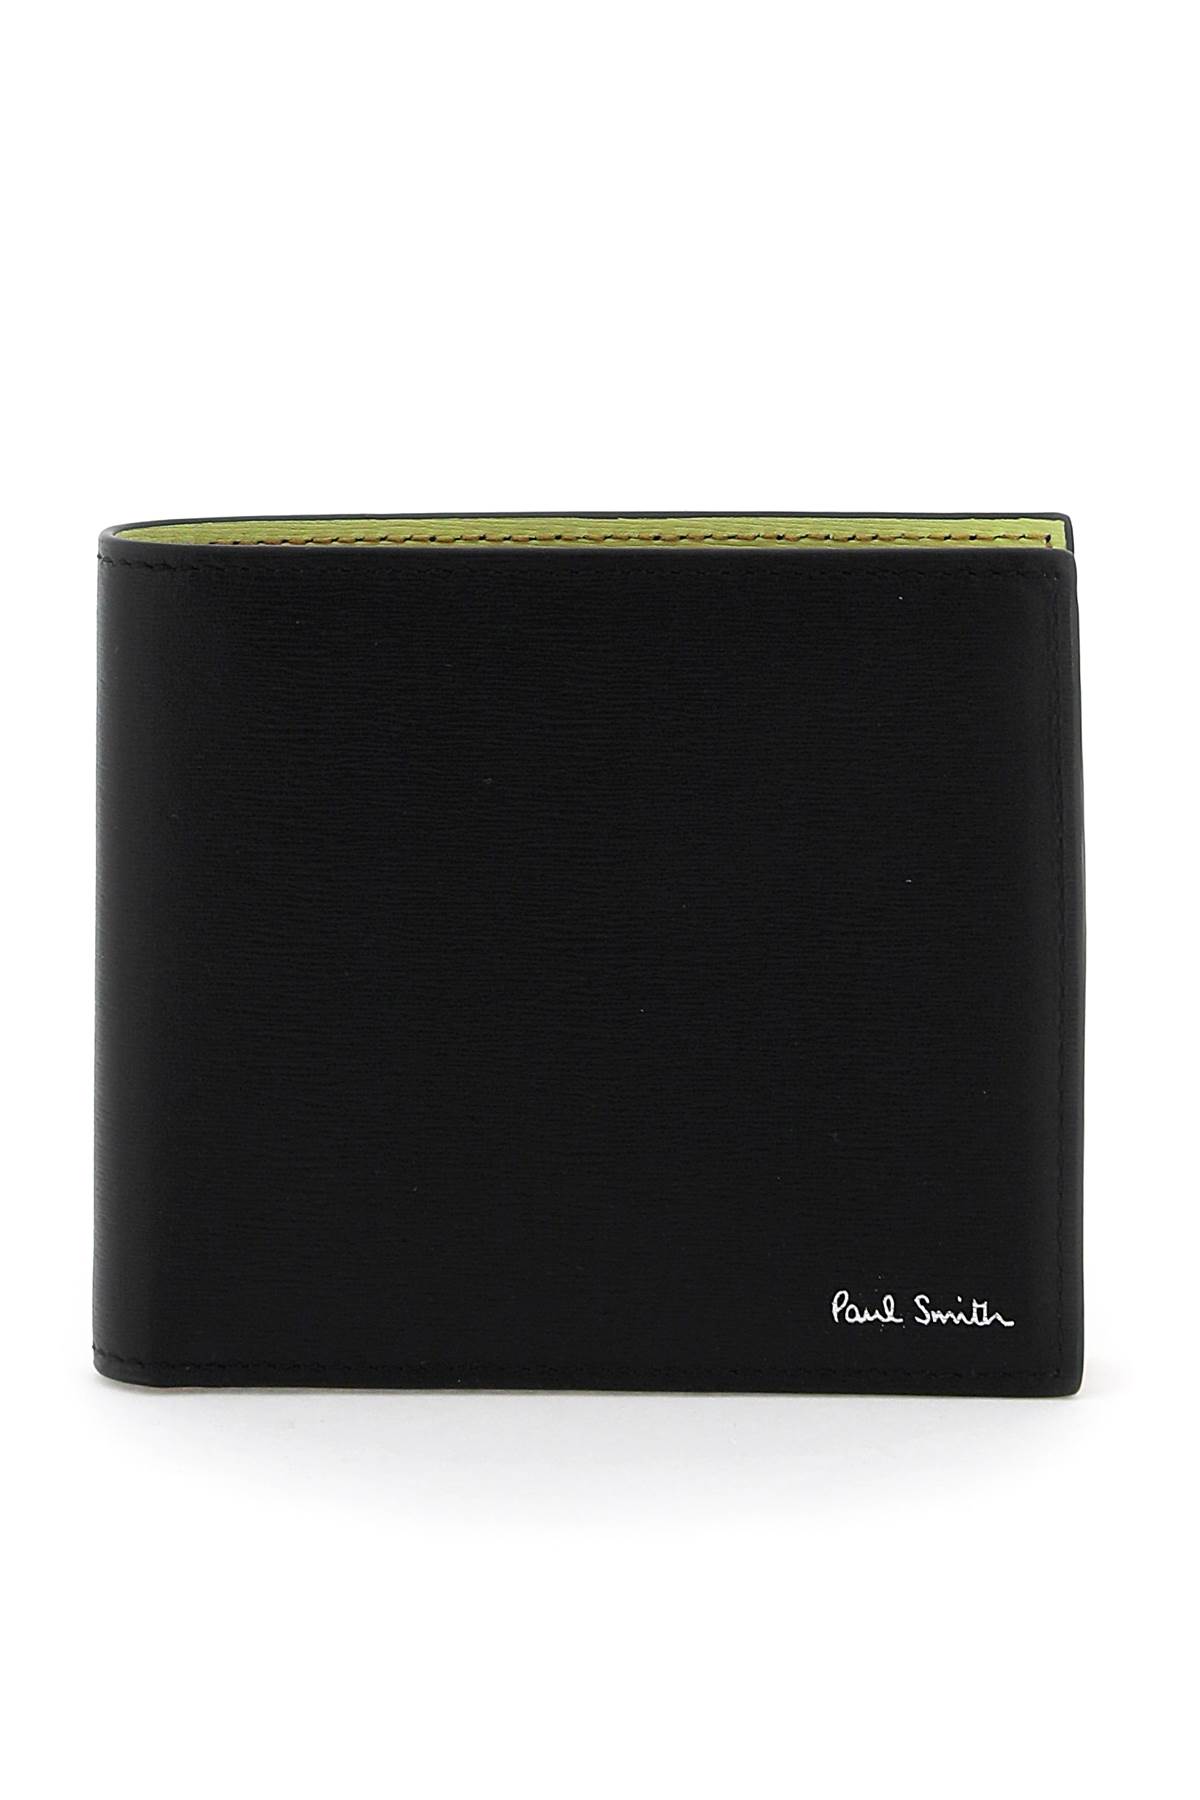 Paul Smith Bifold Wallet In Black (black)